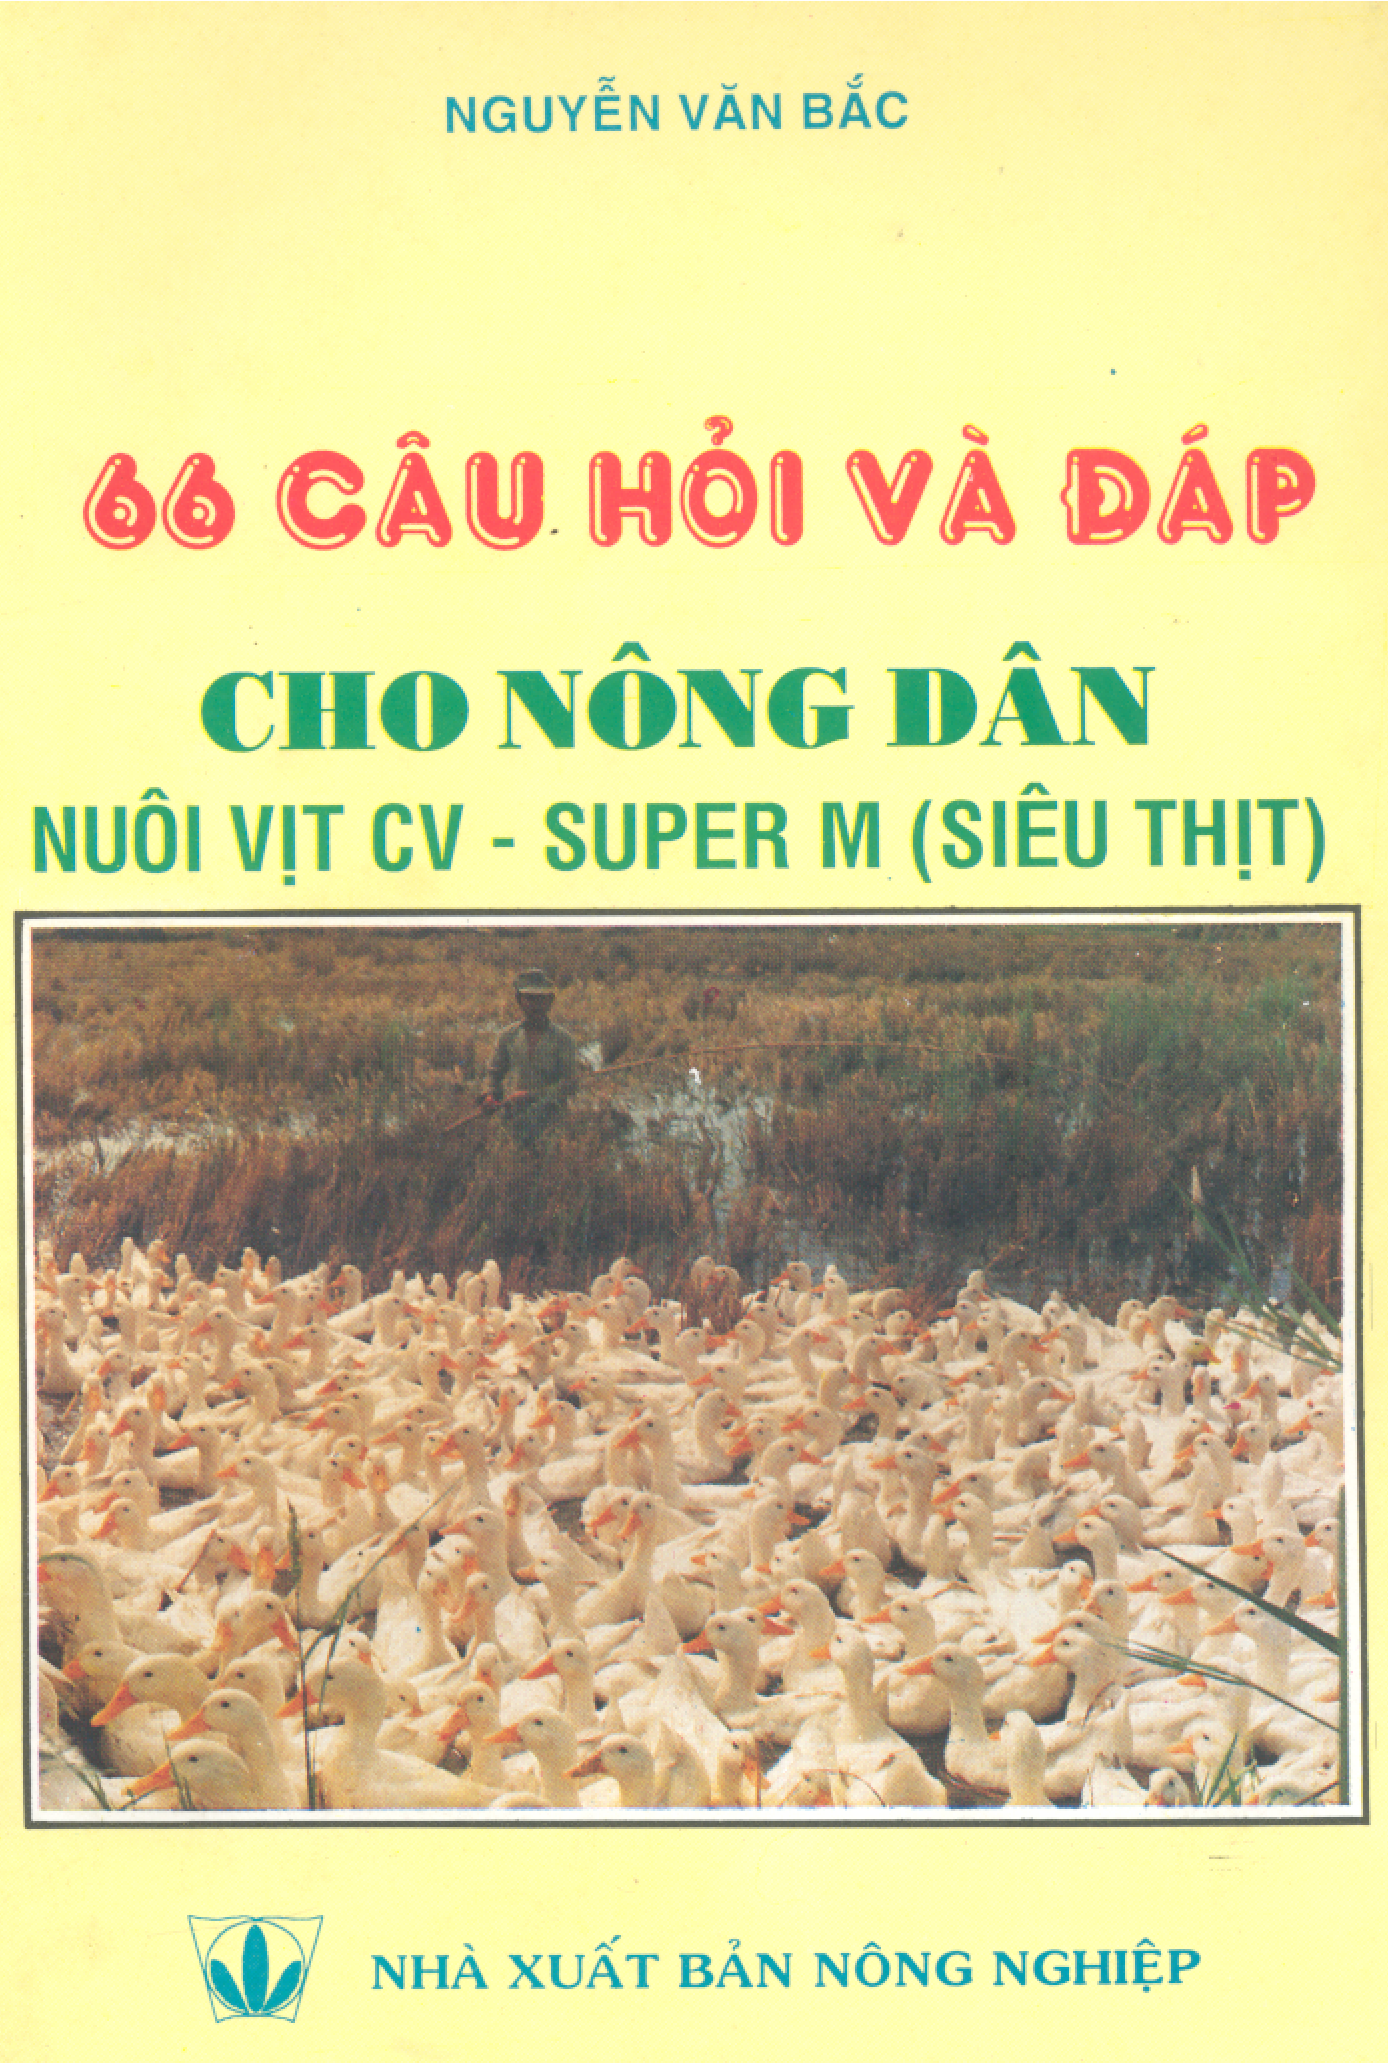 66 câu hỏi và đáp cho nông dân nuôi vịt CV - Super M (siêu thịt)